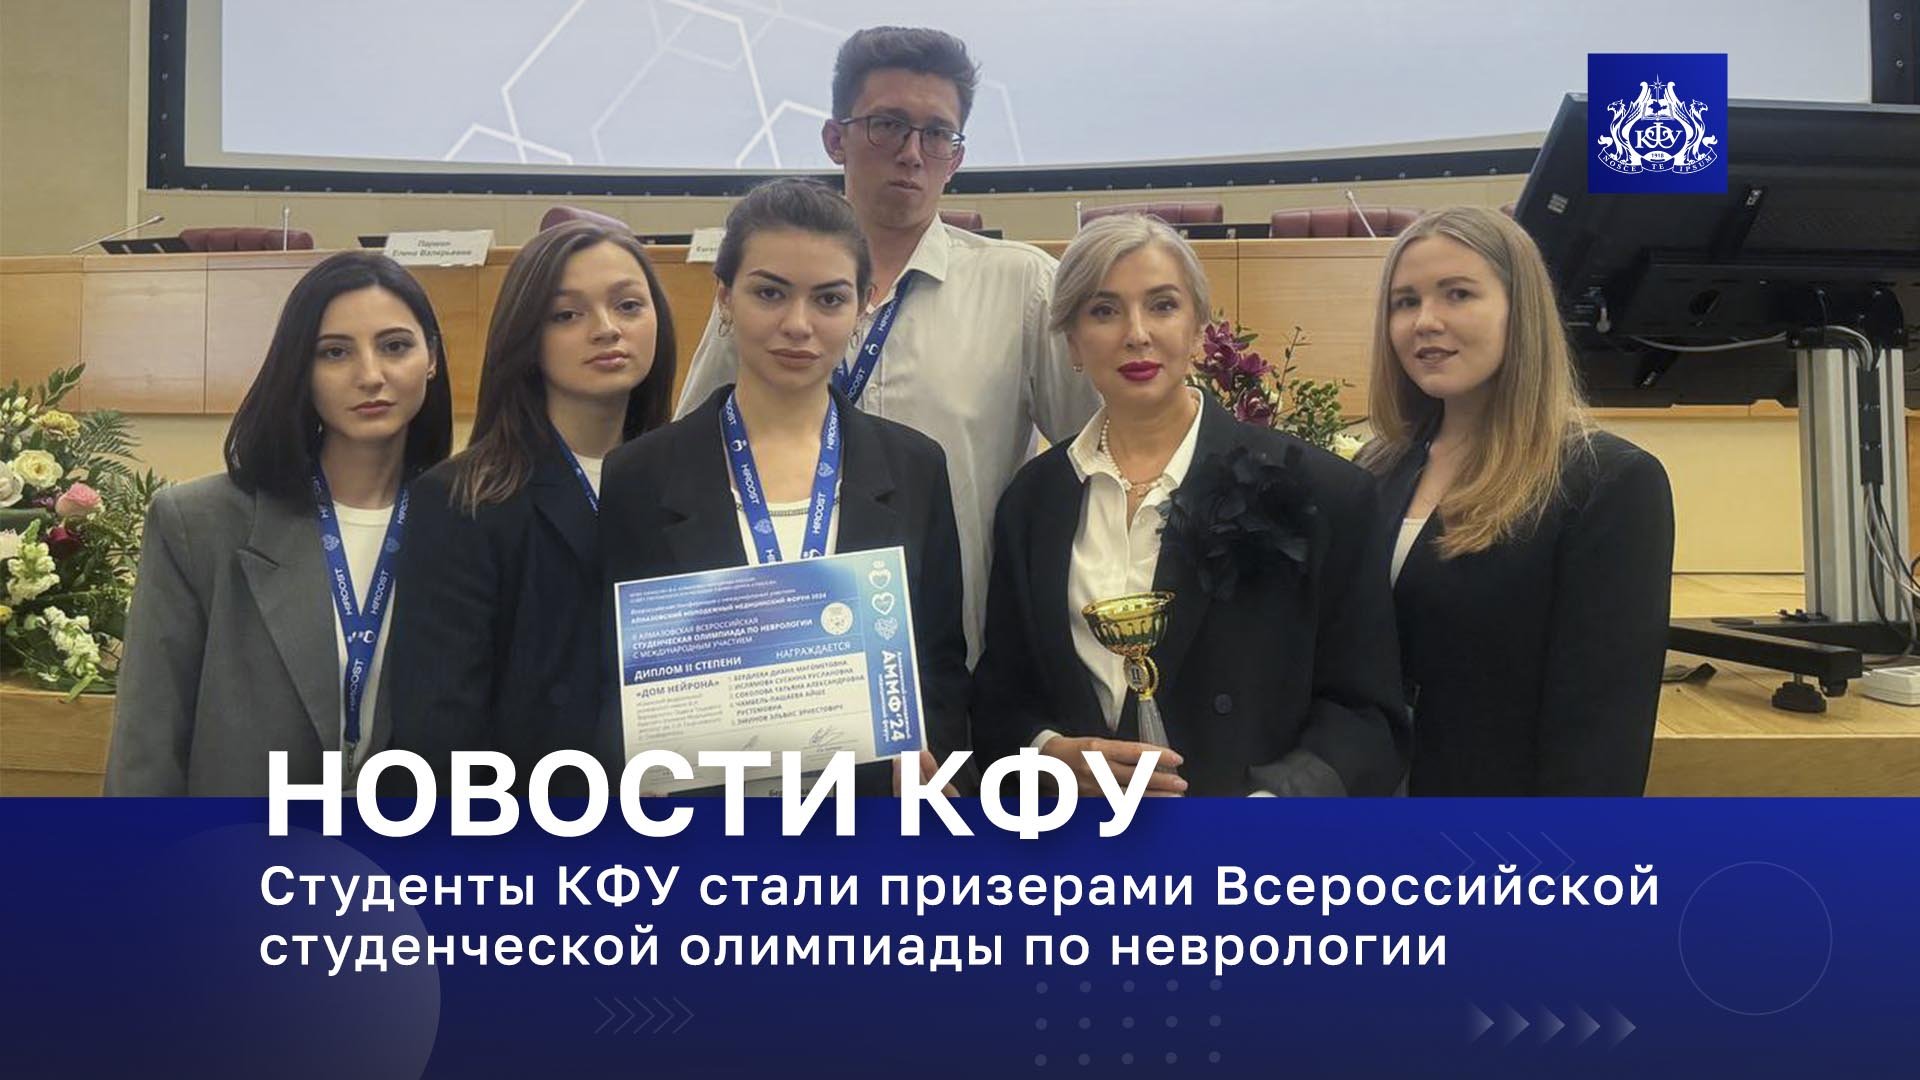 Студенты КФУ стали призерами Всероссийской студенческой олимпиады по неврологии